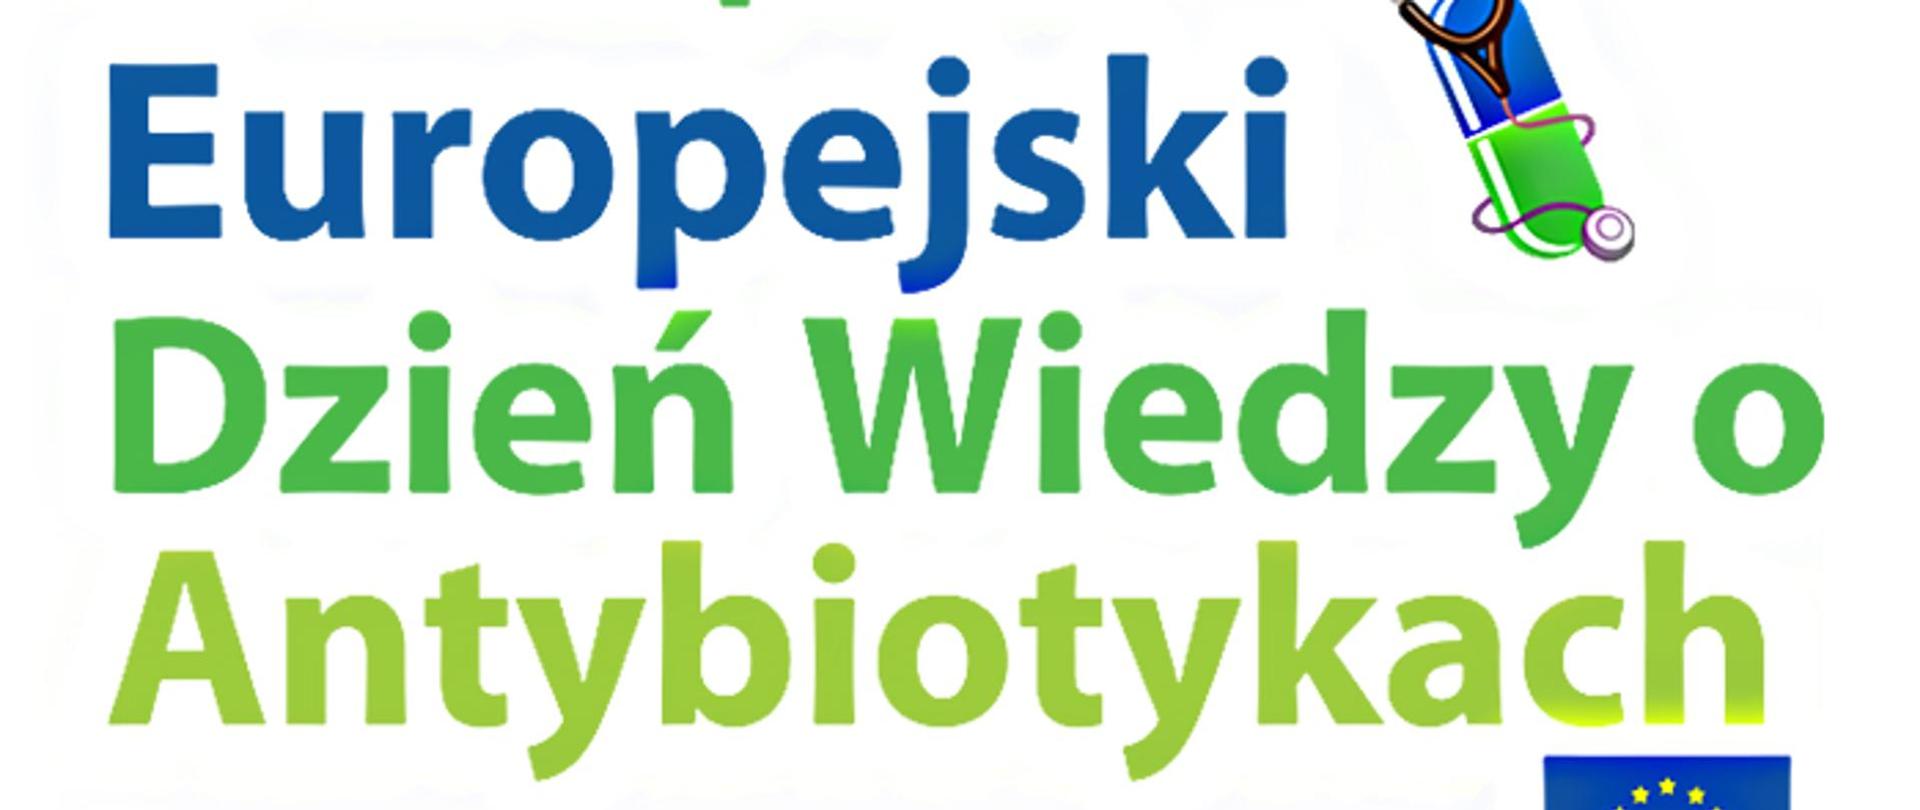 Obraz przedstawia logo Europejskiego Dnia Wiedzy o Antybiotykach